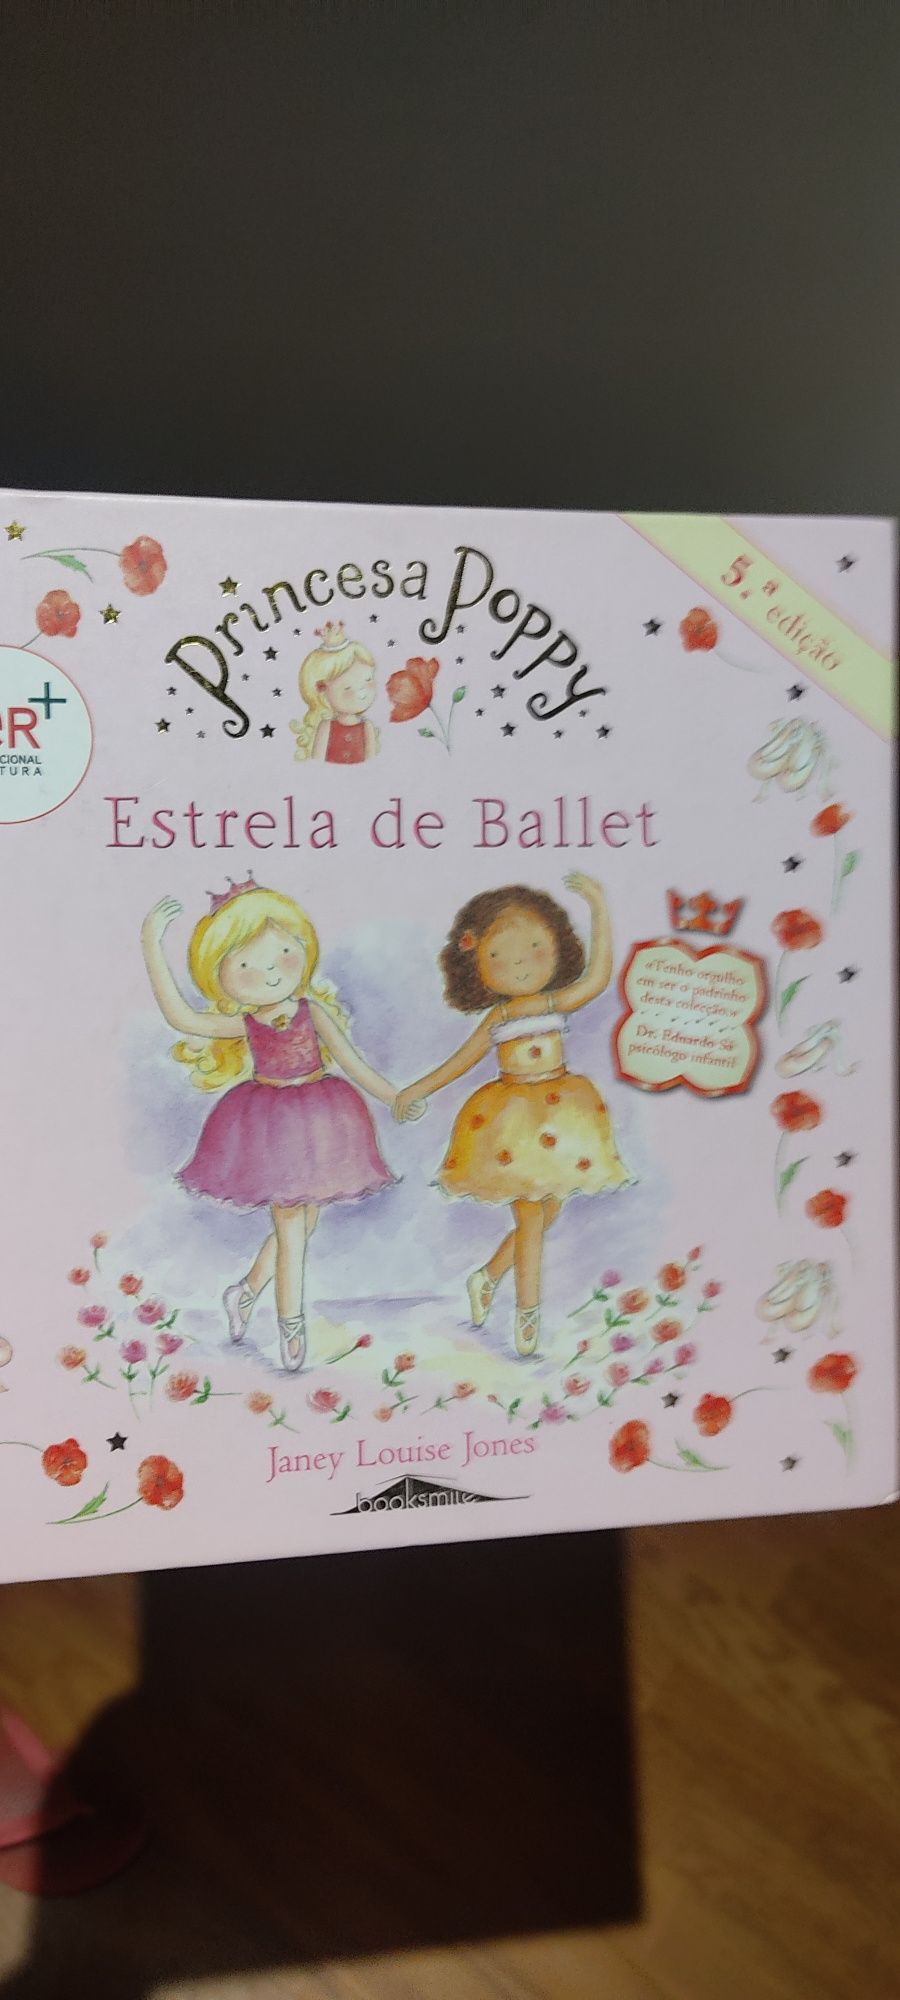 A princesa Poppy (5€) e o livro de receitas da Princesa Poppy ( 10€)